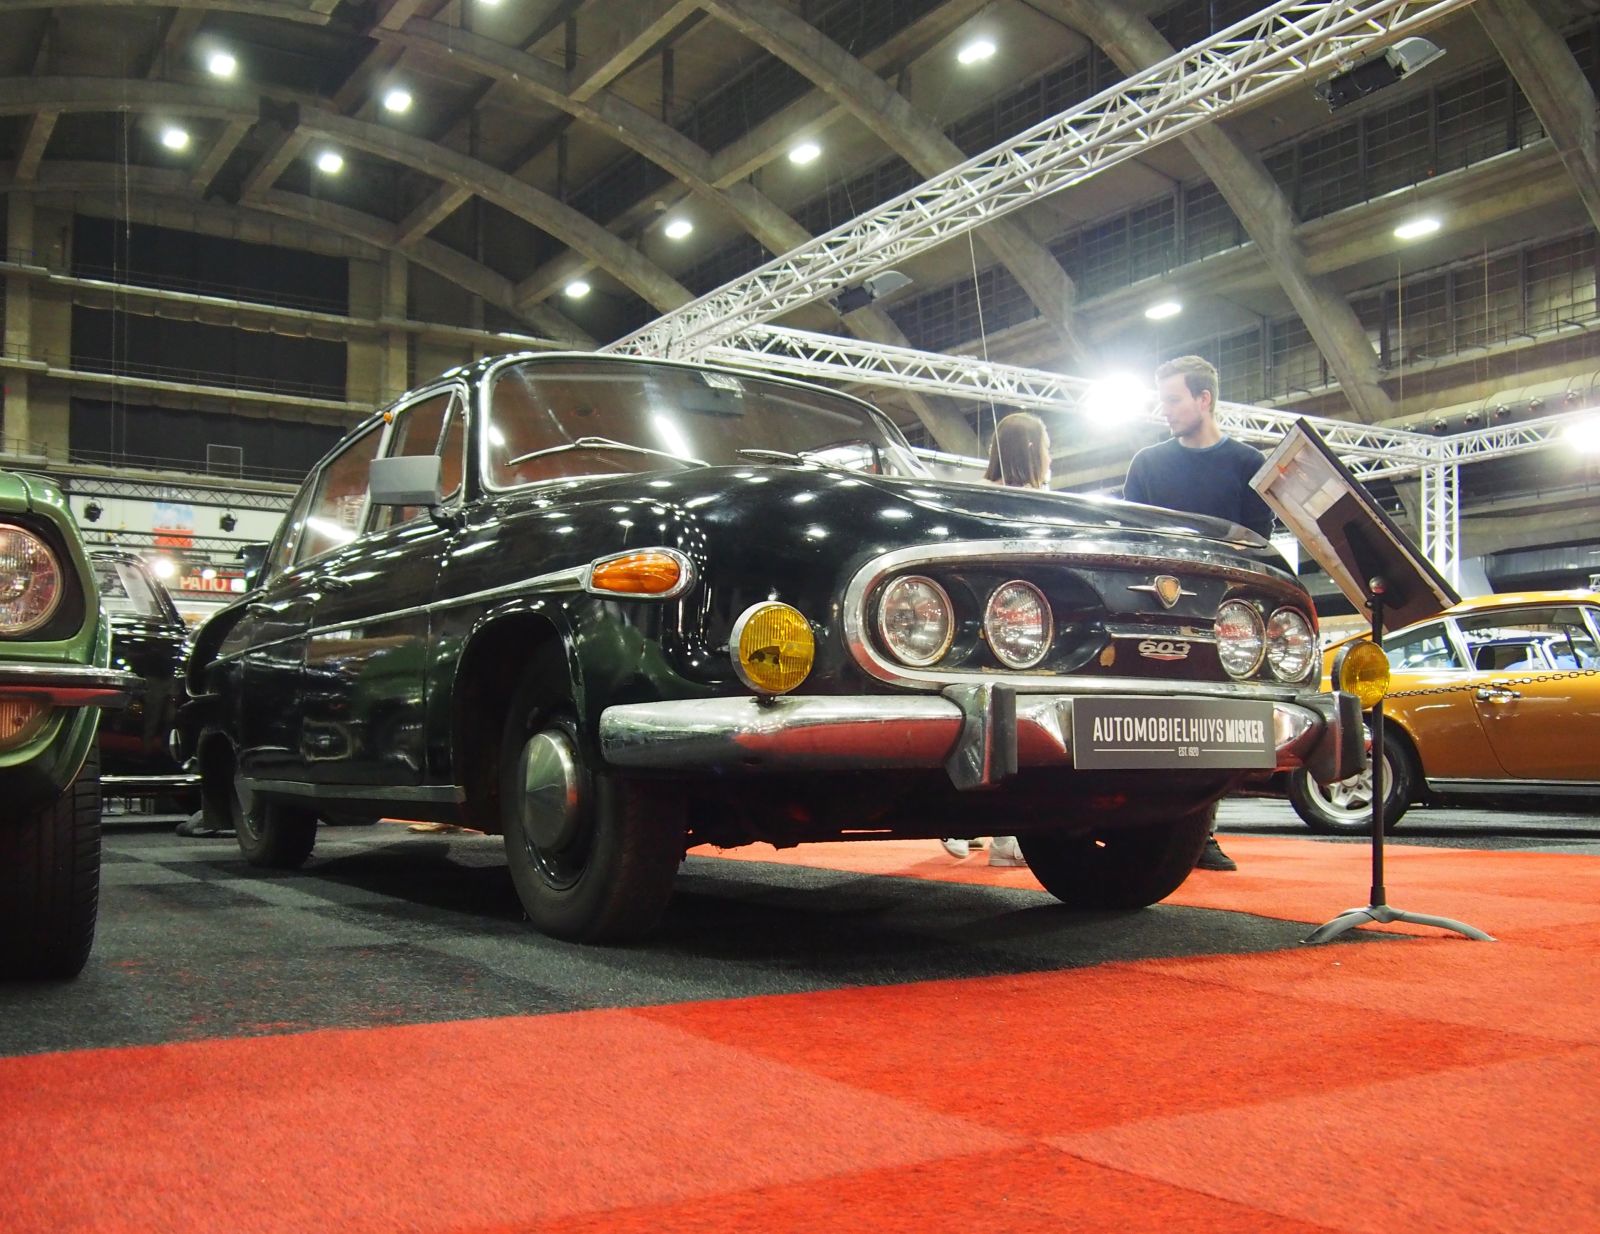 The even more legendary Tatra 603